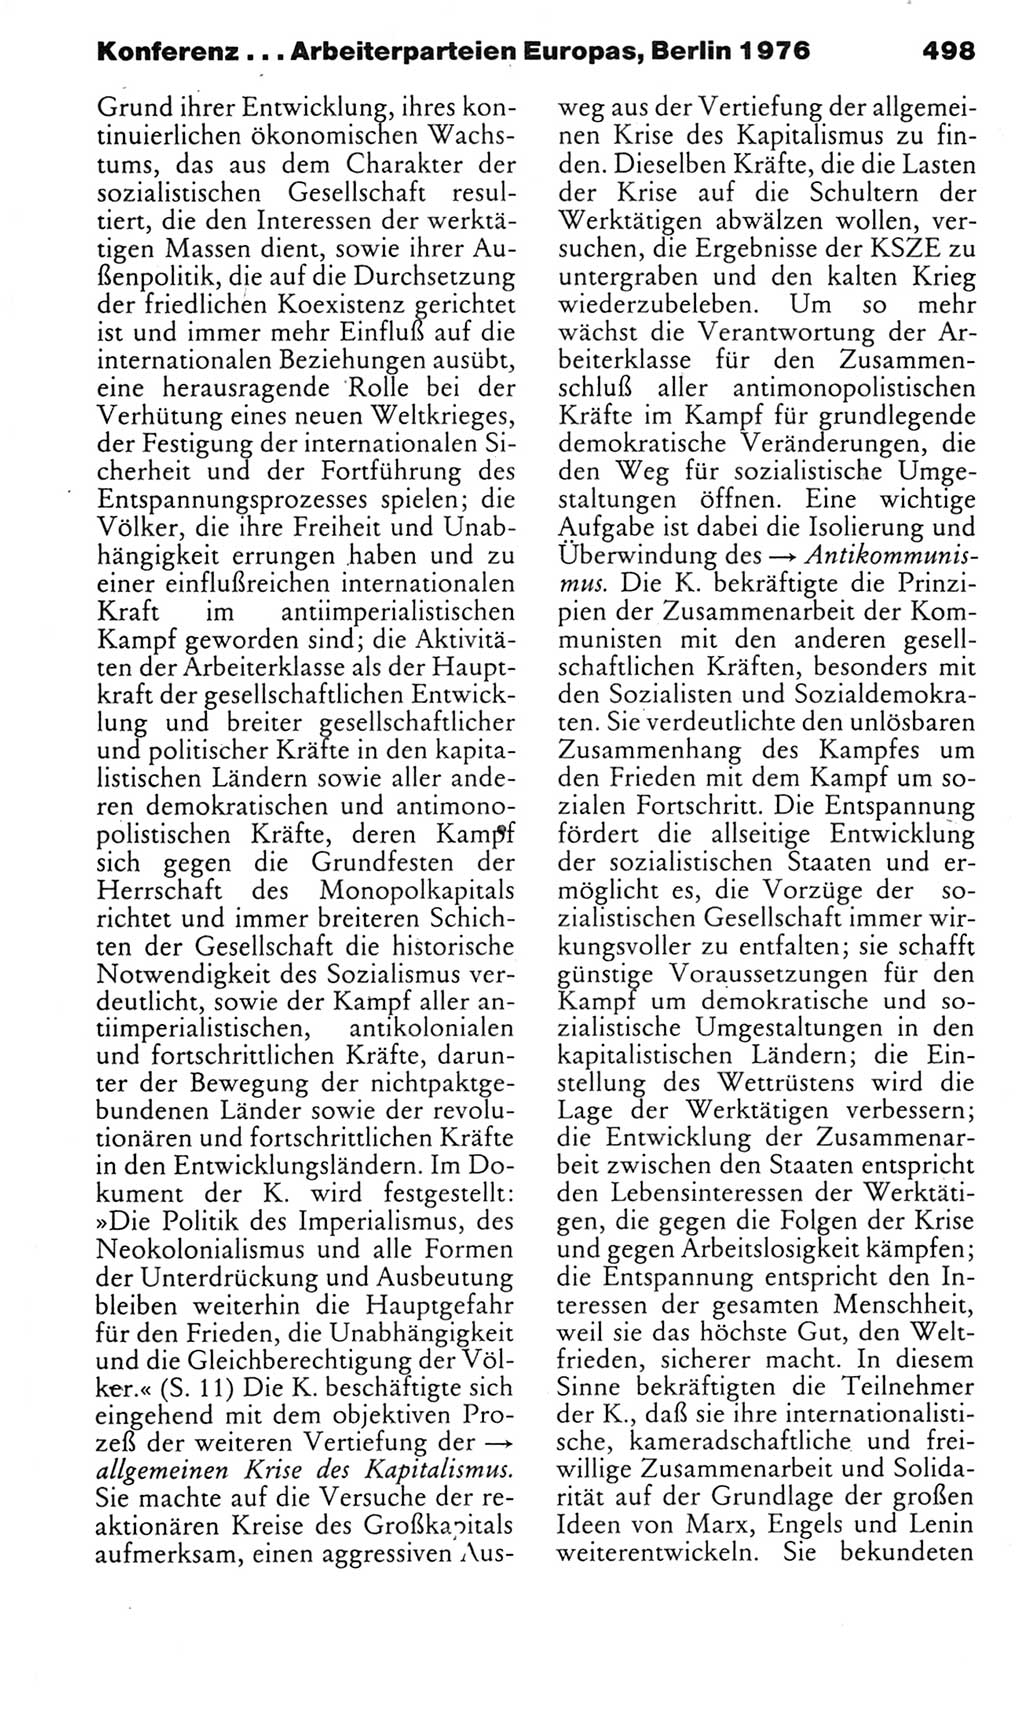 Kleines politisches Wörterbuch [Deutsche Demokratische Republik (DDR)] 1985, Seite 498 (Kl. pol. Wb. DDR 1985, S. 498)